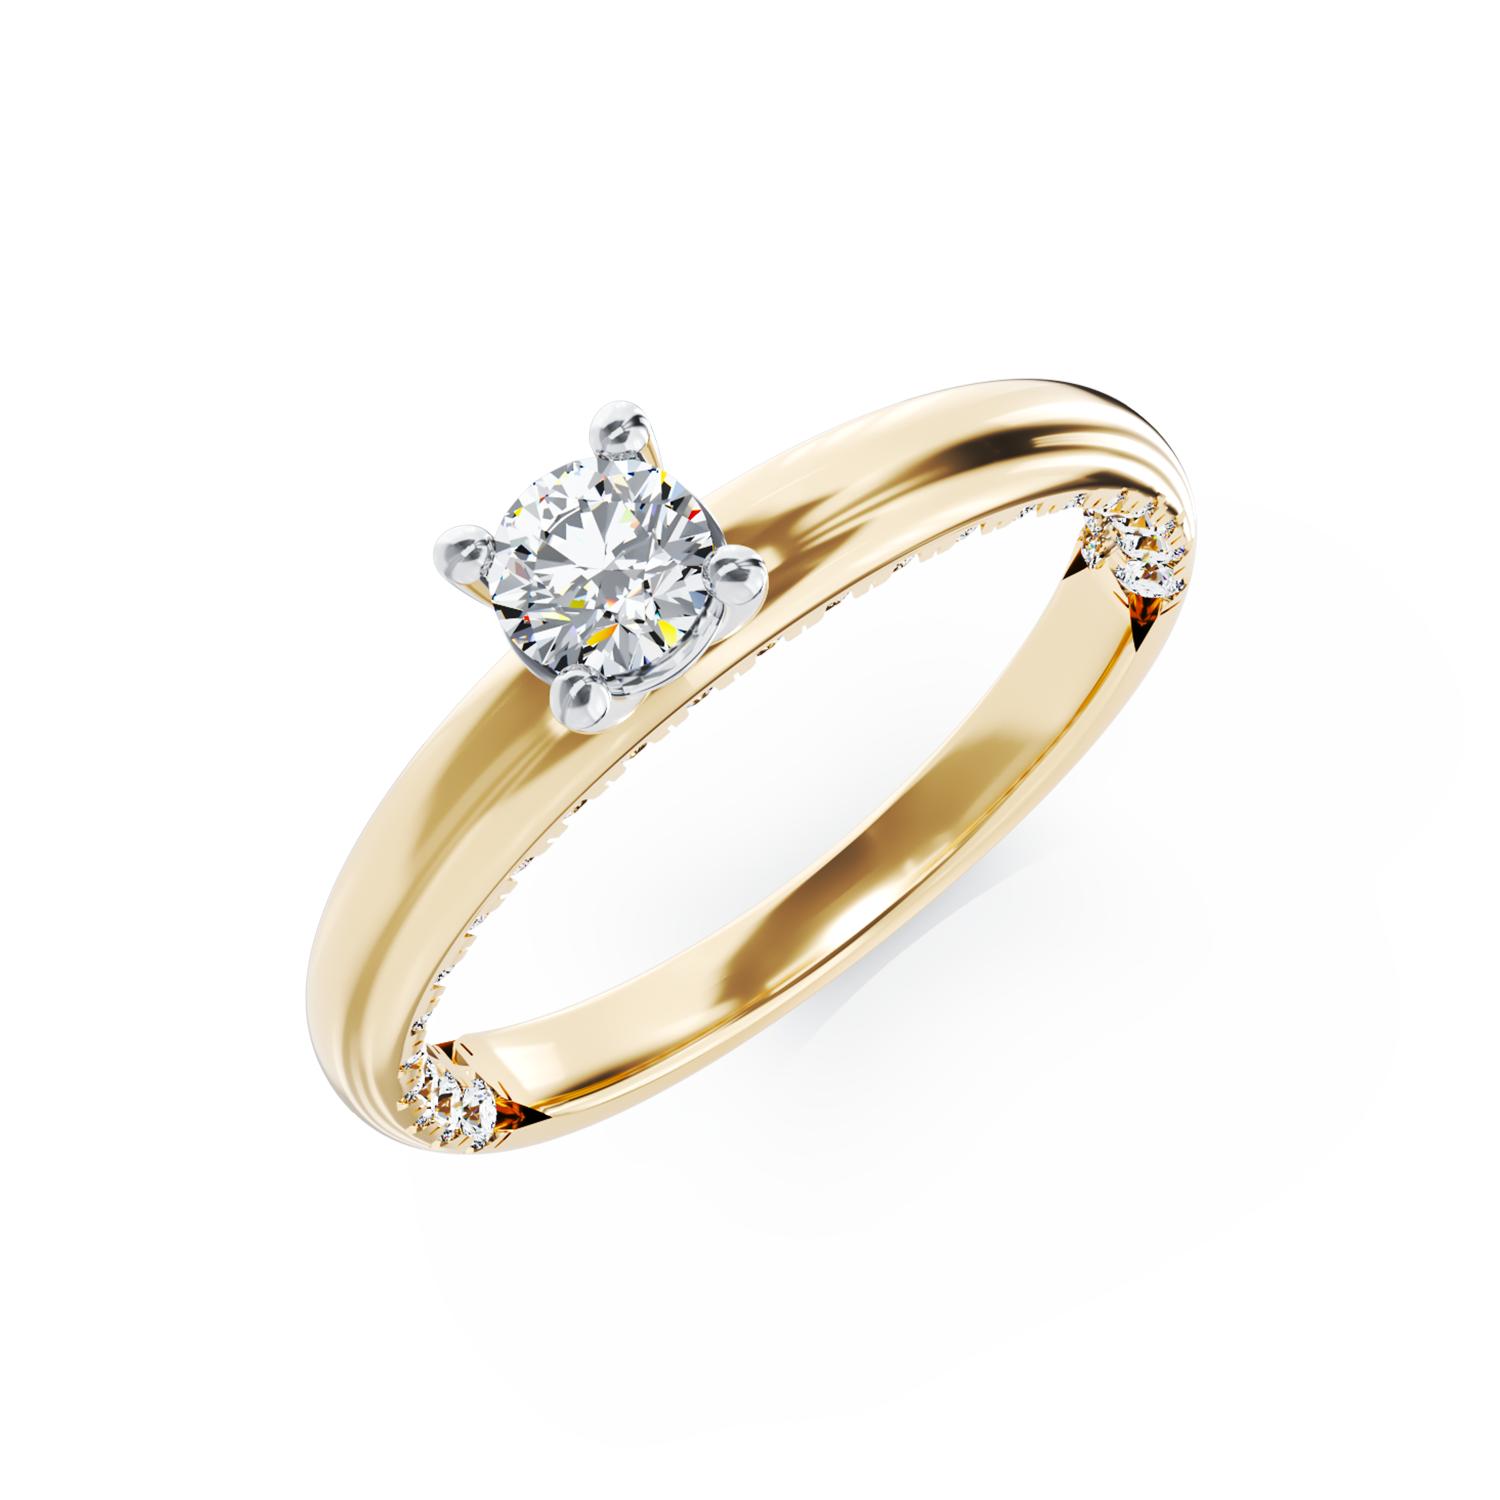 Eljegyzési gyűrű 18K-os sárga aranyból 0,19ct gyémánttal és 0,2ct gyémánttal. Gramm: 3,14